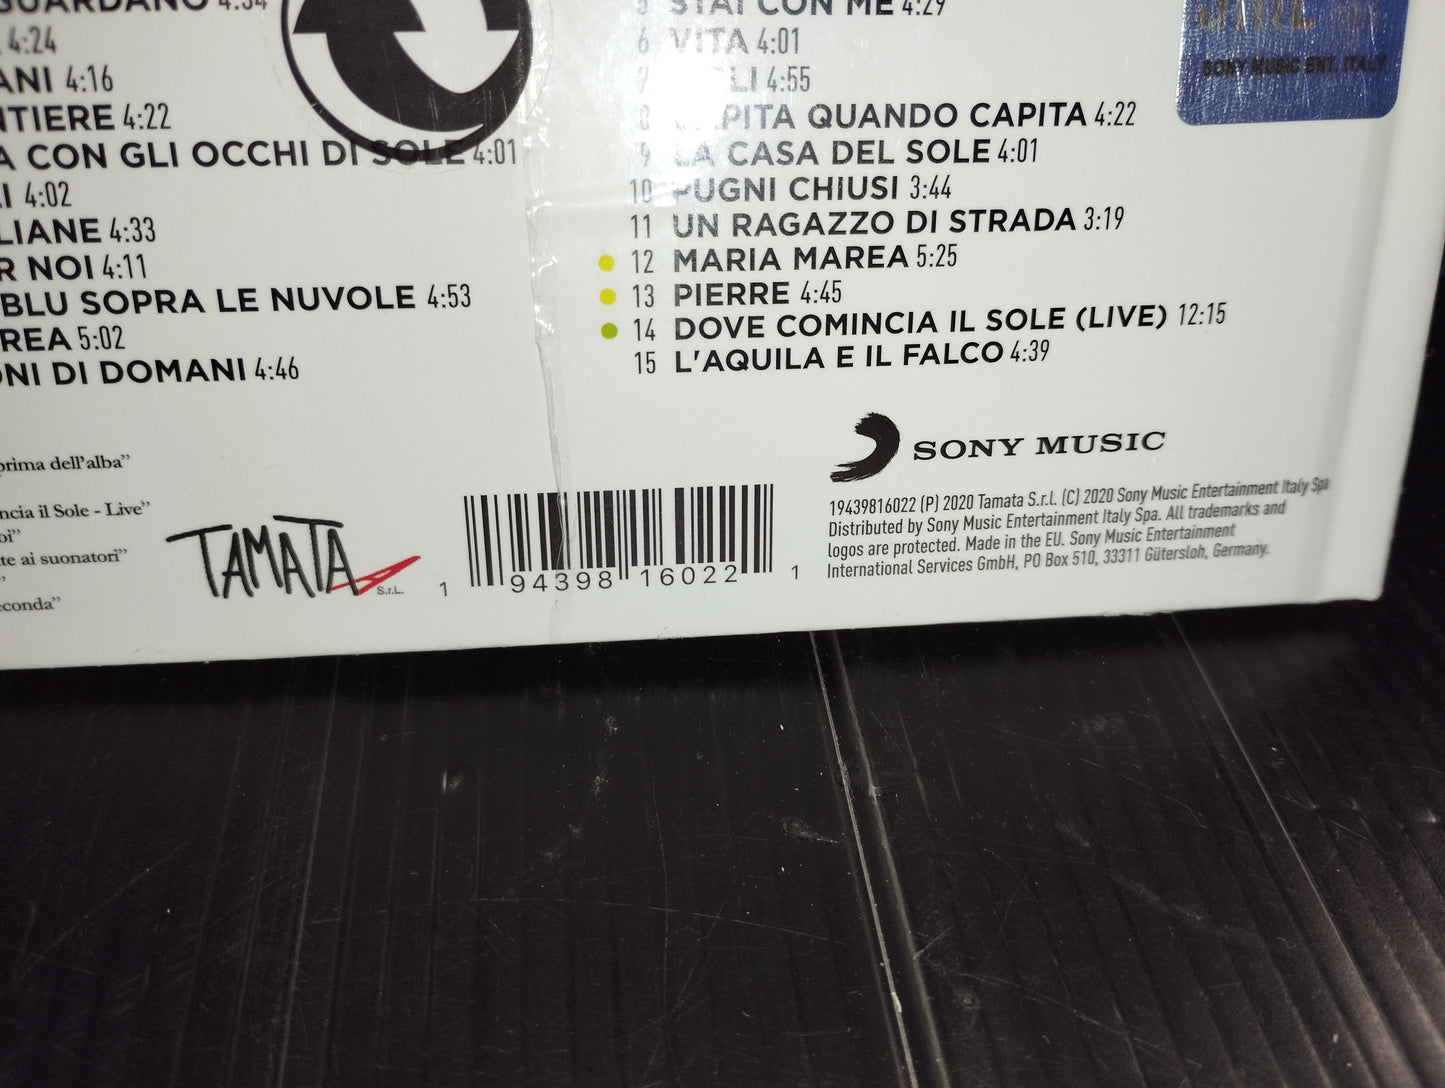 Pooh Le Canzoni Della Nostra Storia" Cofanetto 4 CD